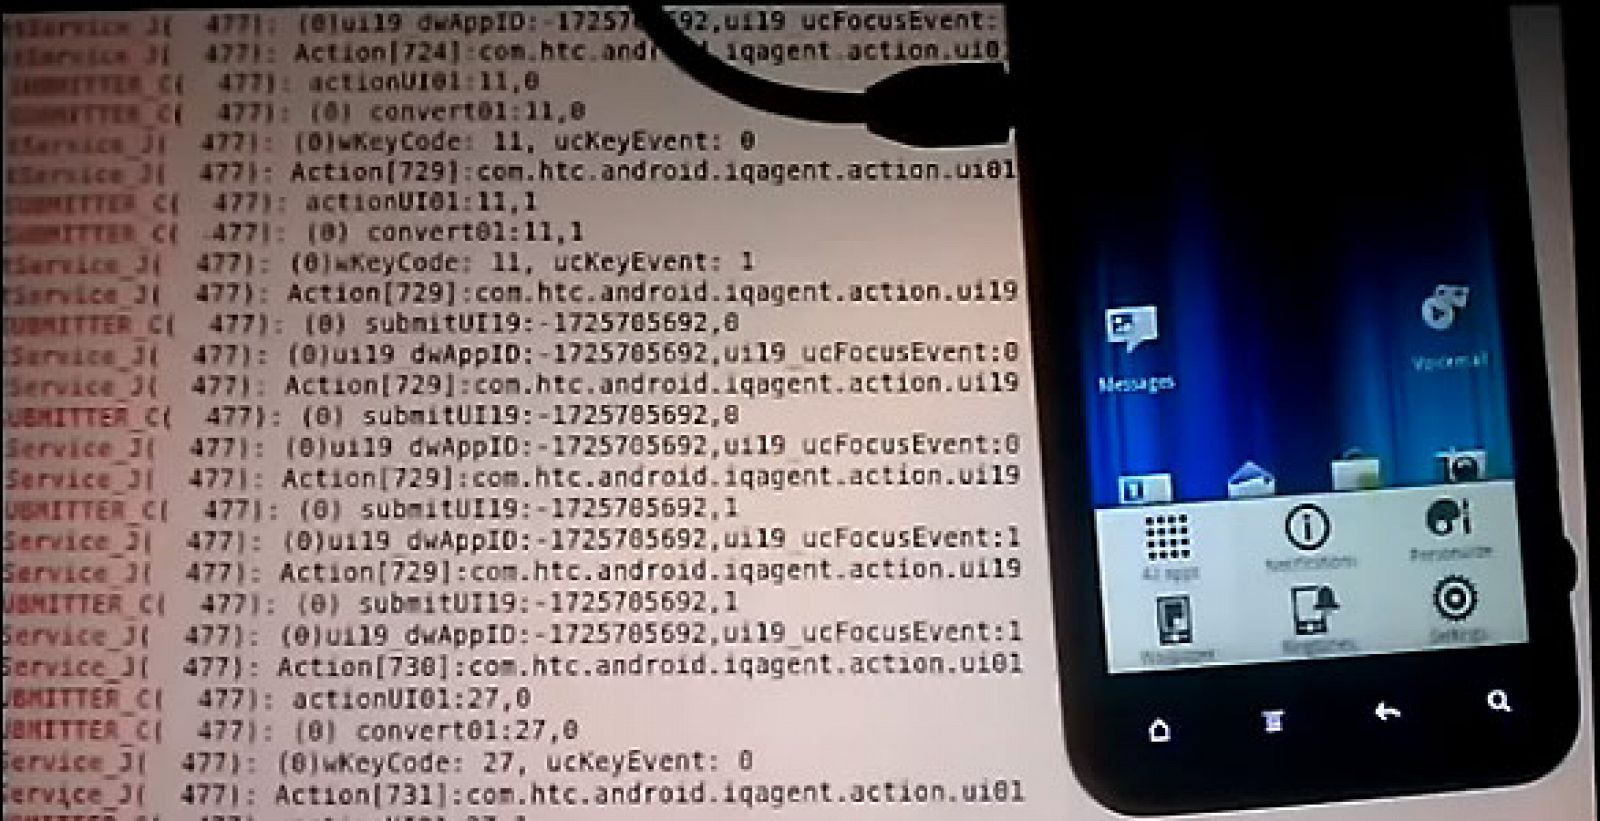 Captura de pantalla del vídeo publicado por el desarrollador que denuncia la intrusión de Carrier IQ